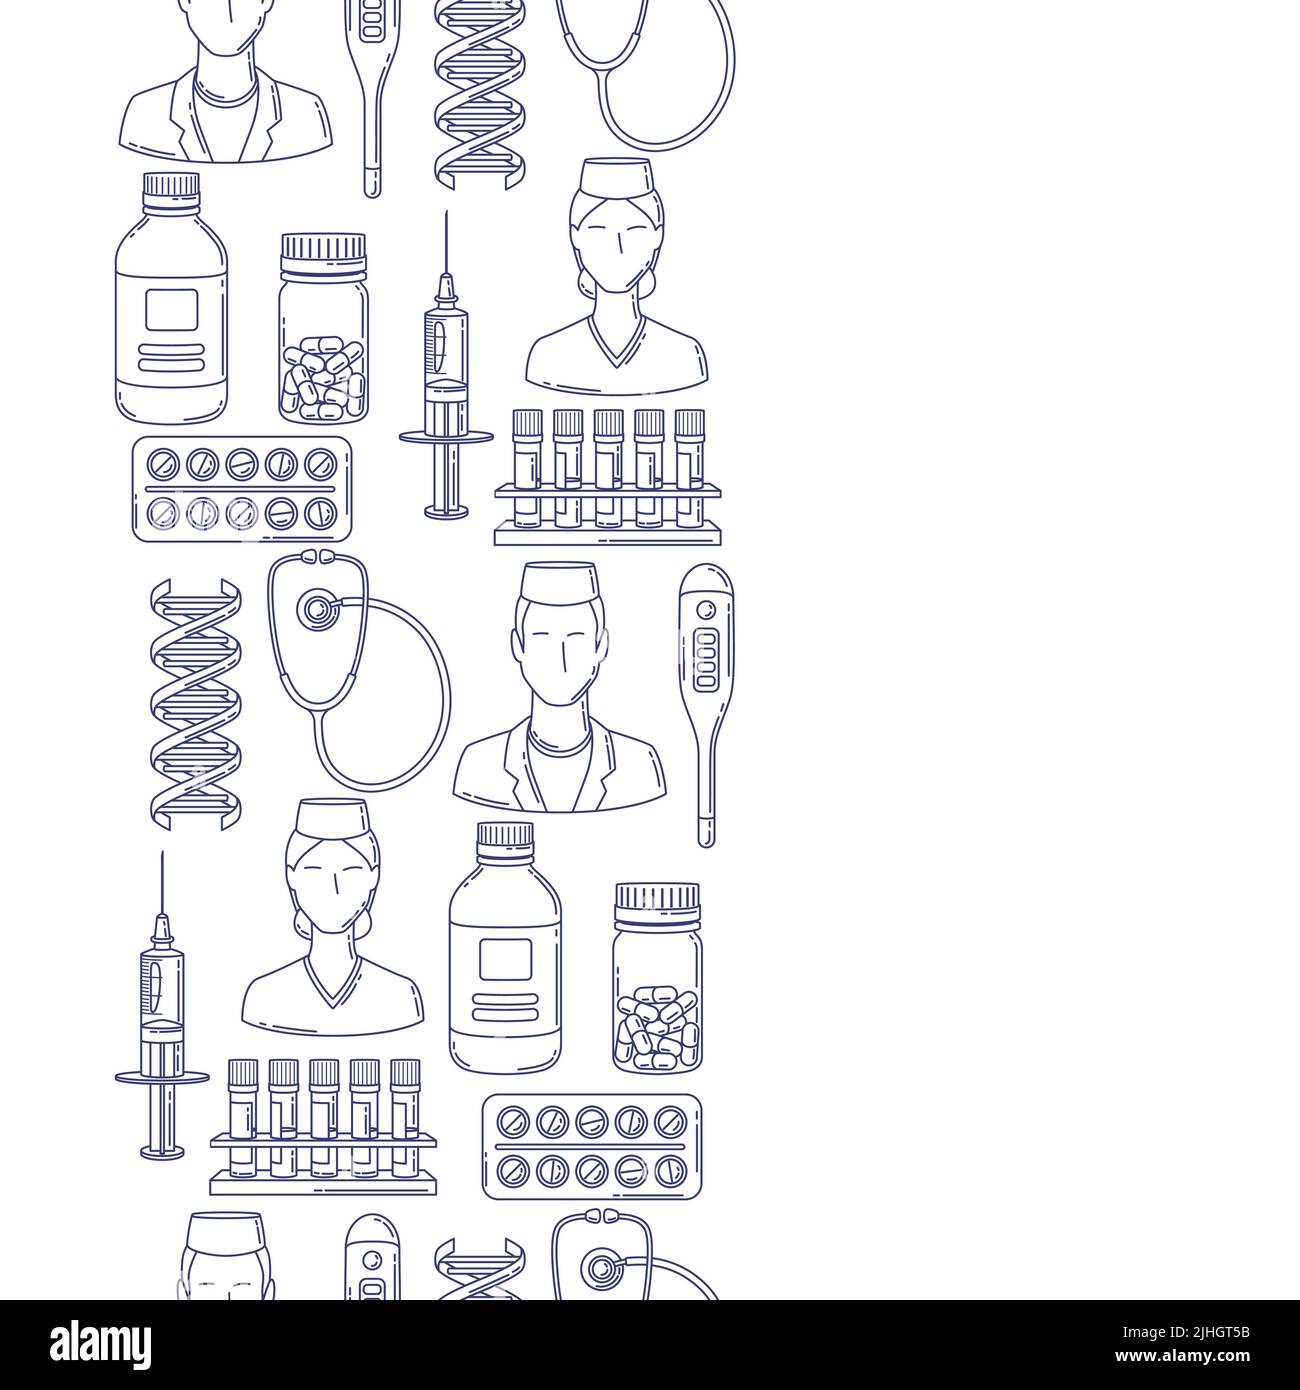 Nahtloses Muster mit medizinischen und medizinischen Gegenständen. Geräte und Symbole für Apotheken und Krankenhäuser. Stock Vektor